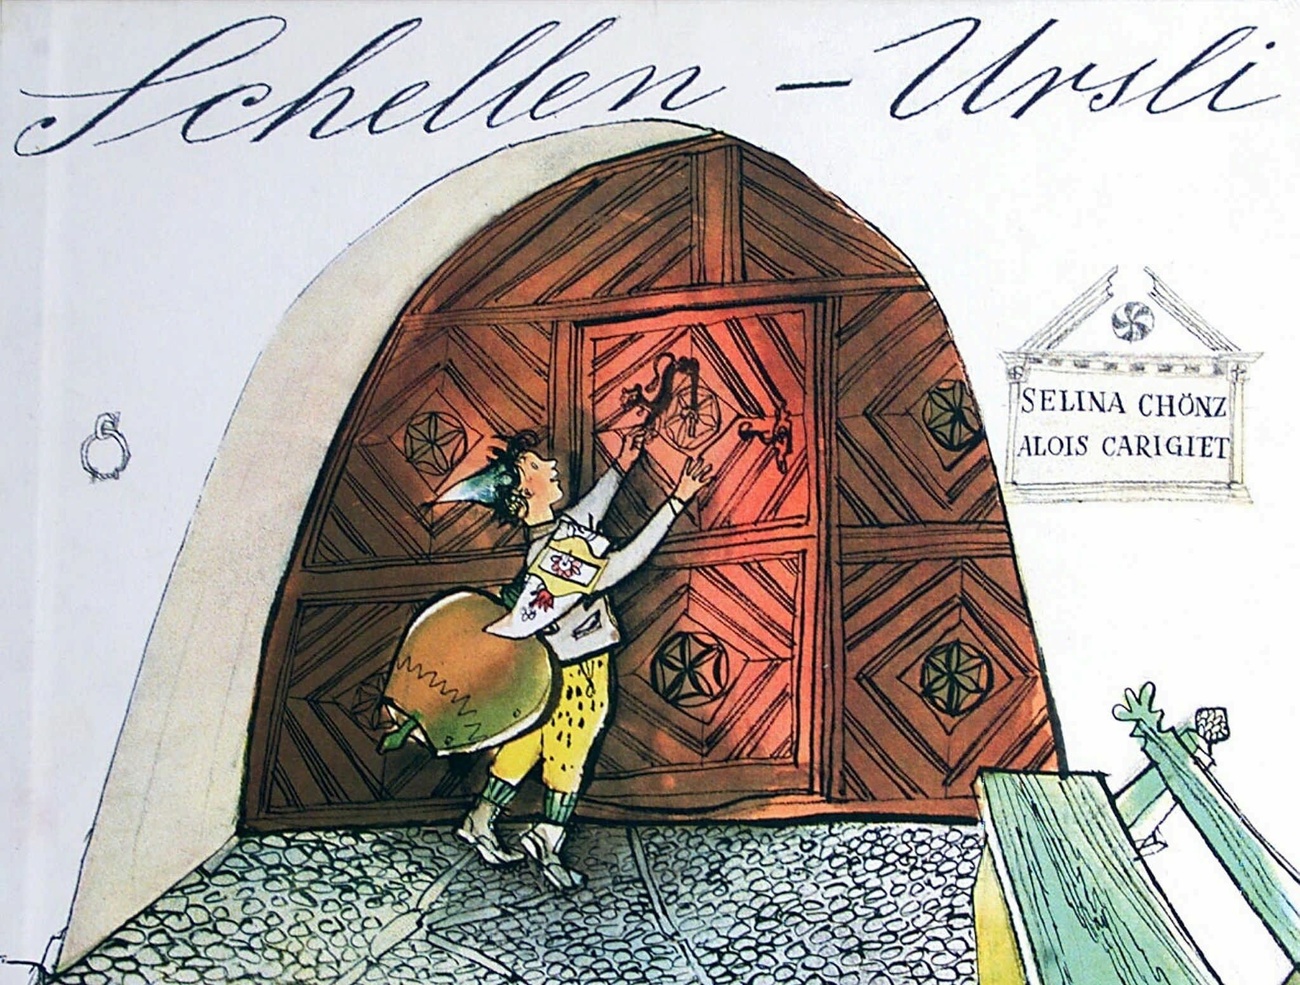 兒童讀物《小烏爾斯的鈴鐺》的作者是Selina Chönz ，插圖作者是Alois Carigiet，是瑞士的經典作品，被翻譯成了8種語言。